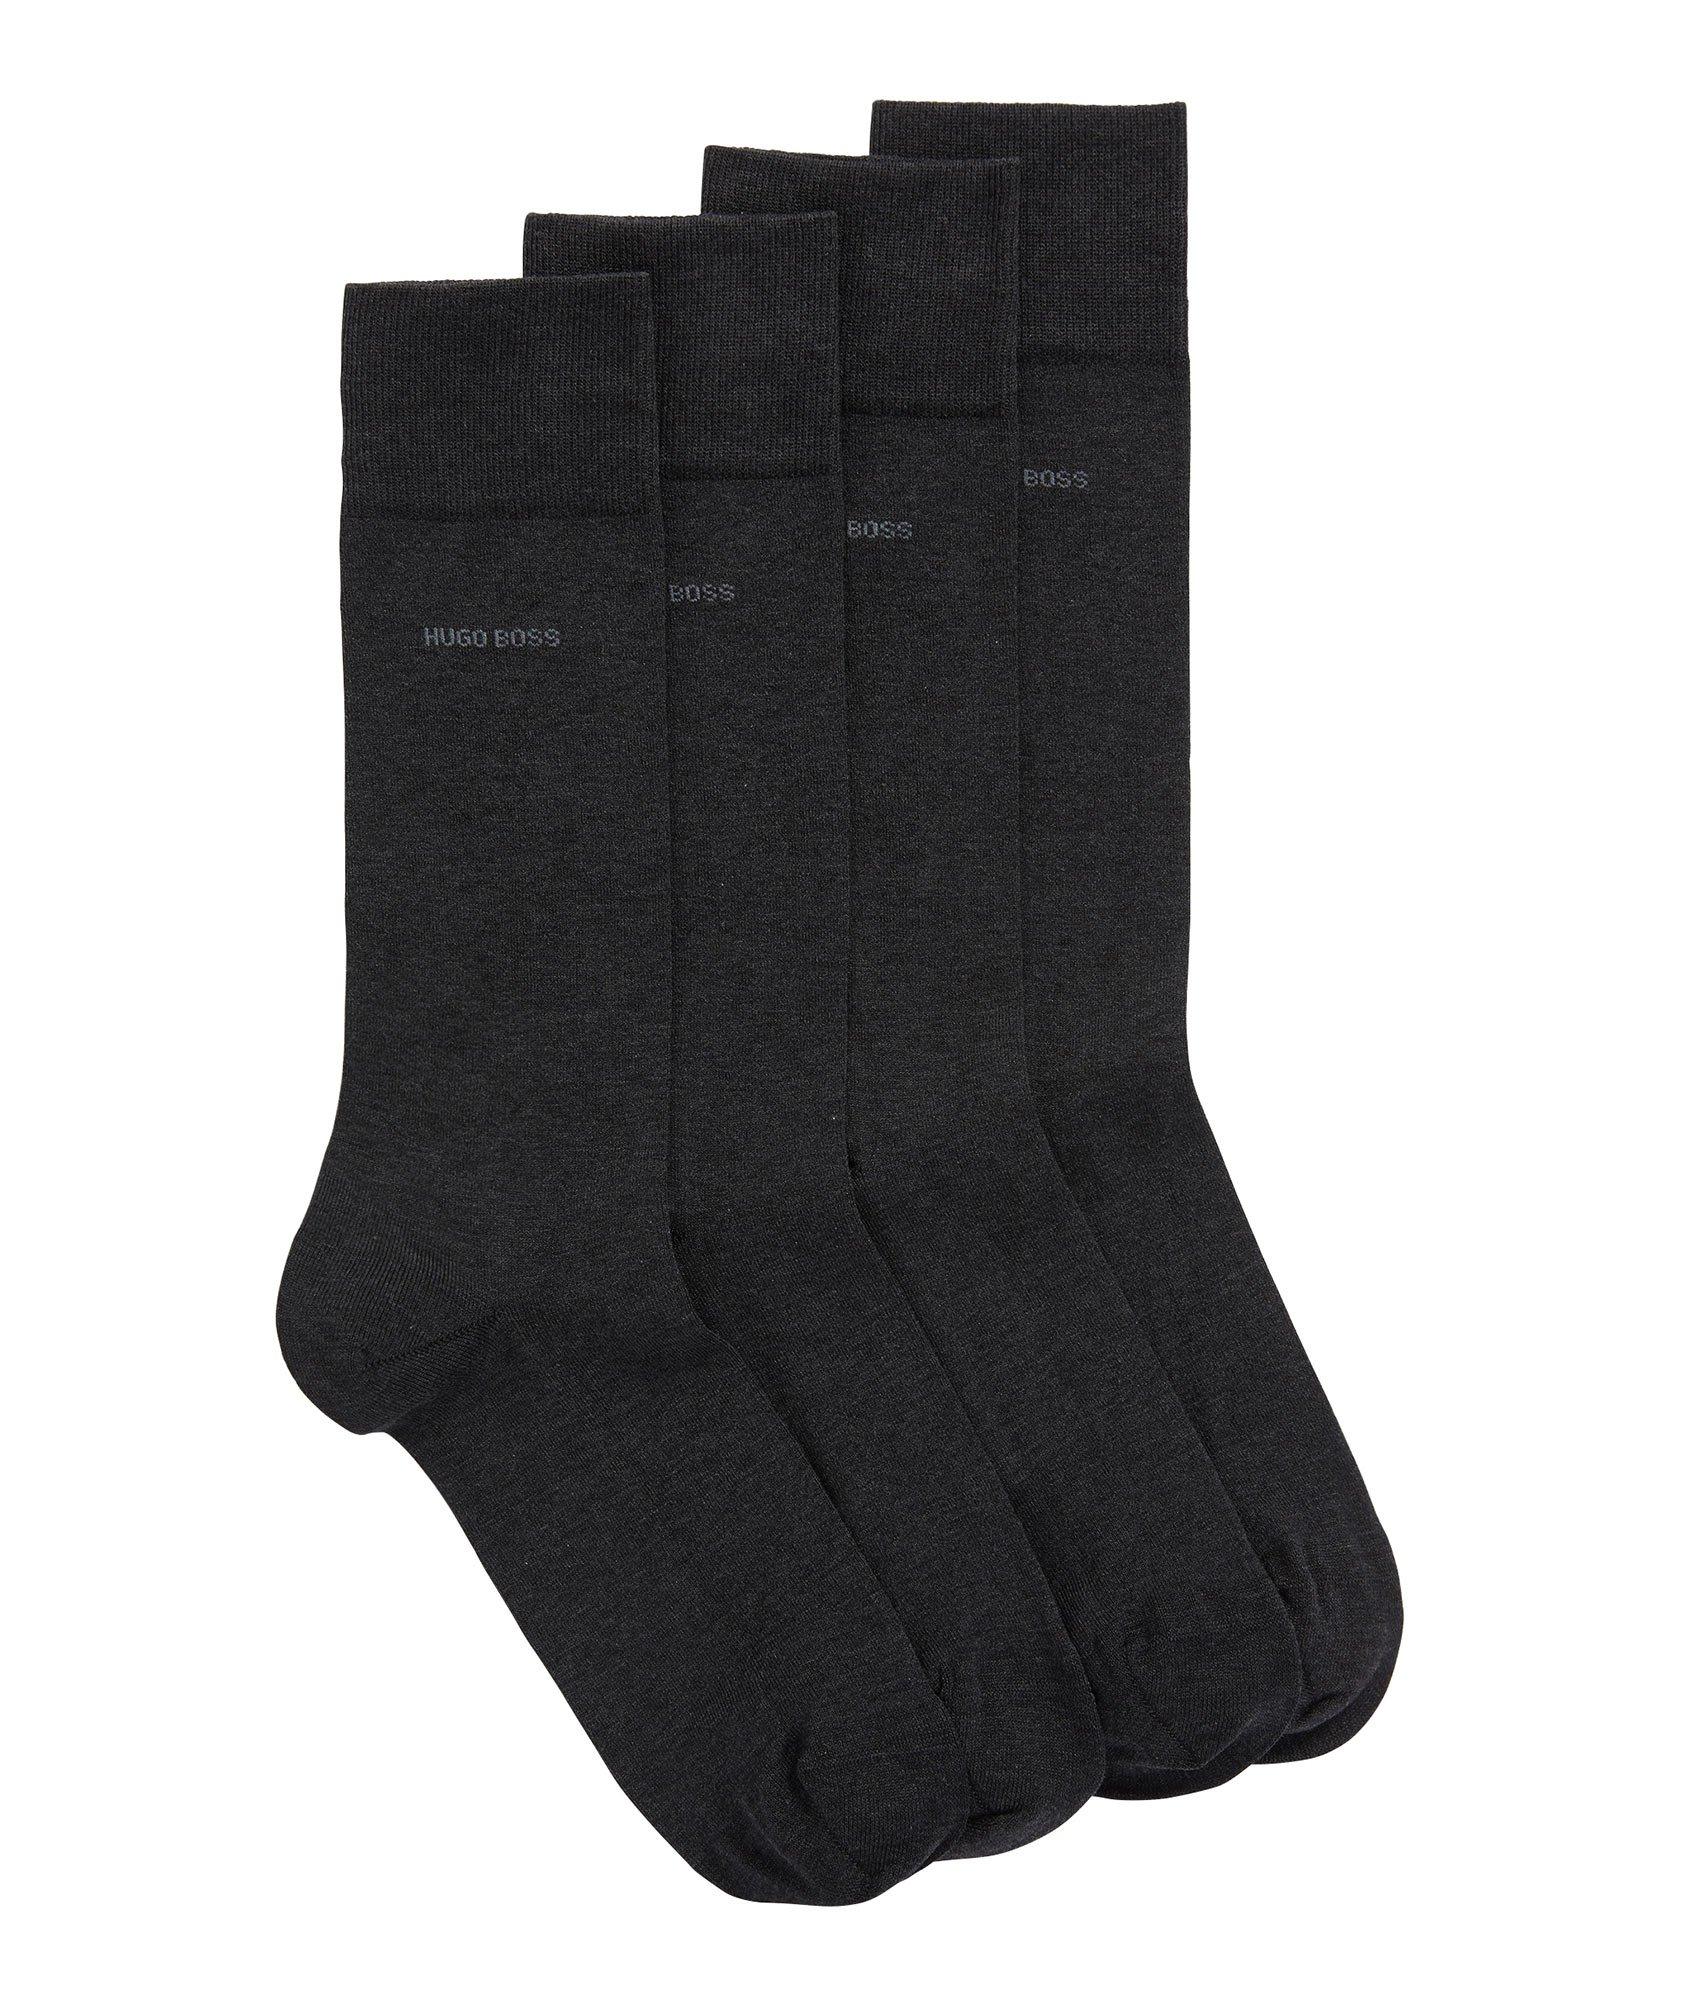 2-Pack Mercerized-Cotton Socks image 0